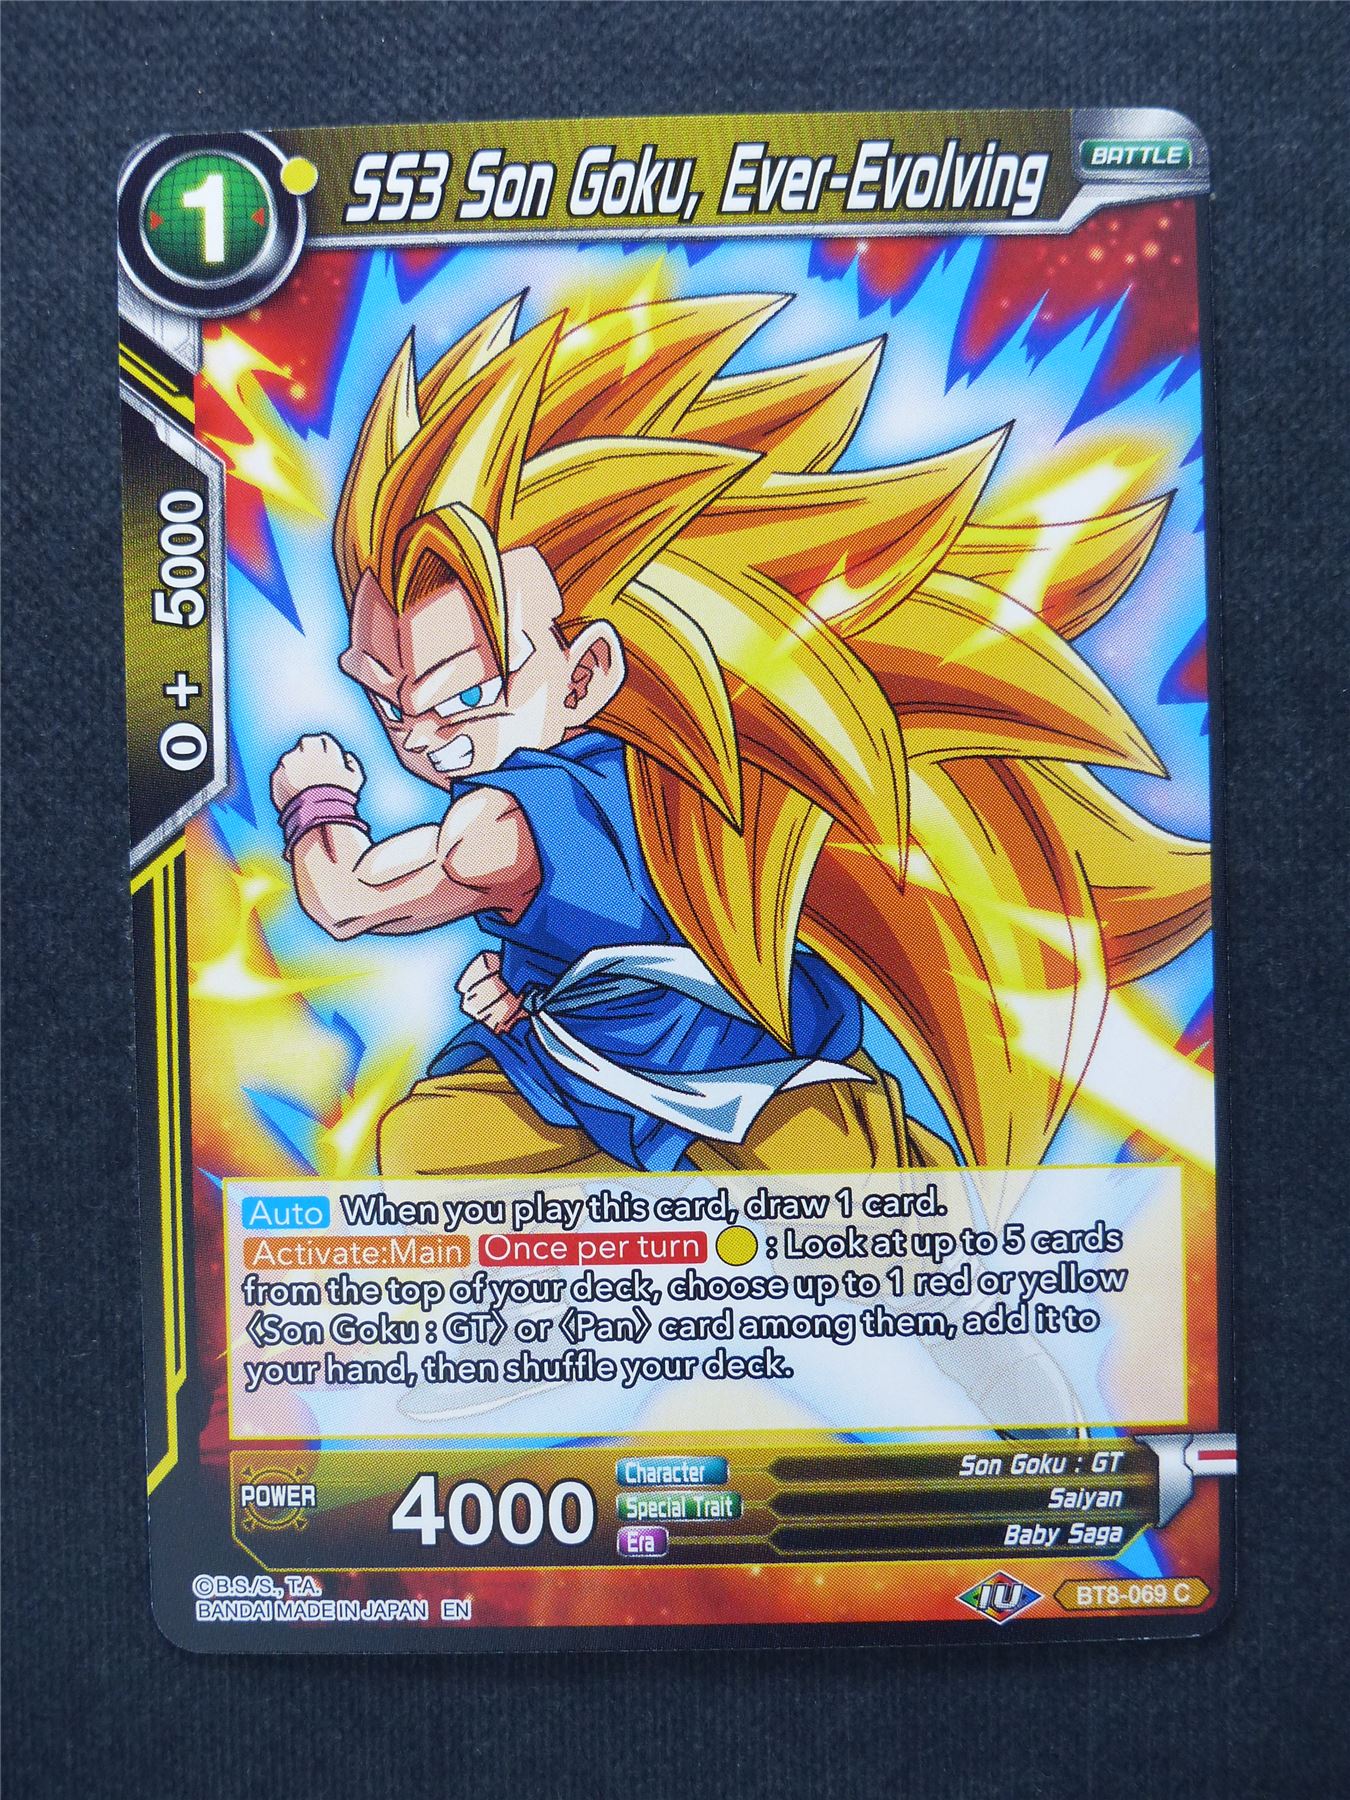 SS3 Son Goku Ever-Evolving - Dragon Ball Super Cards #Z8